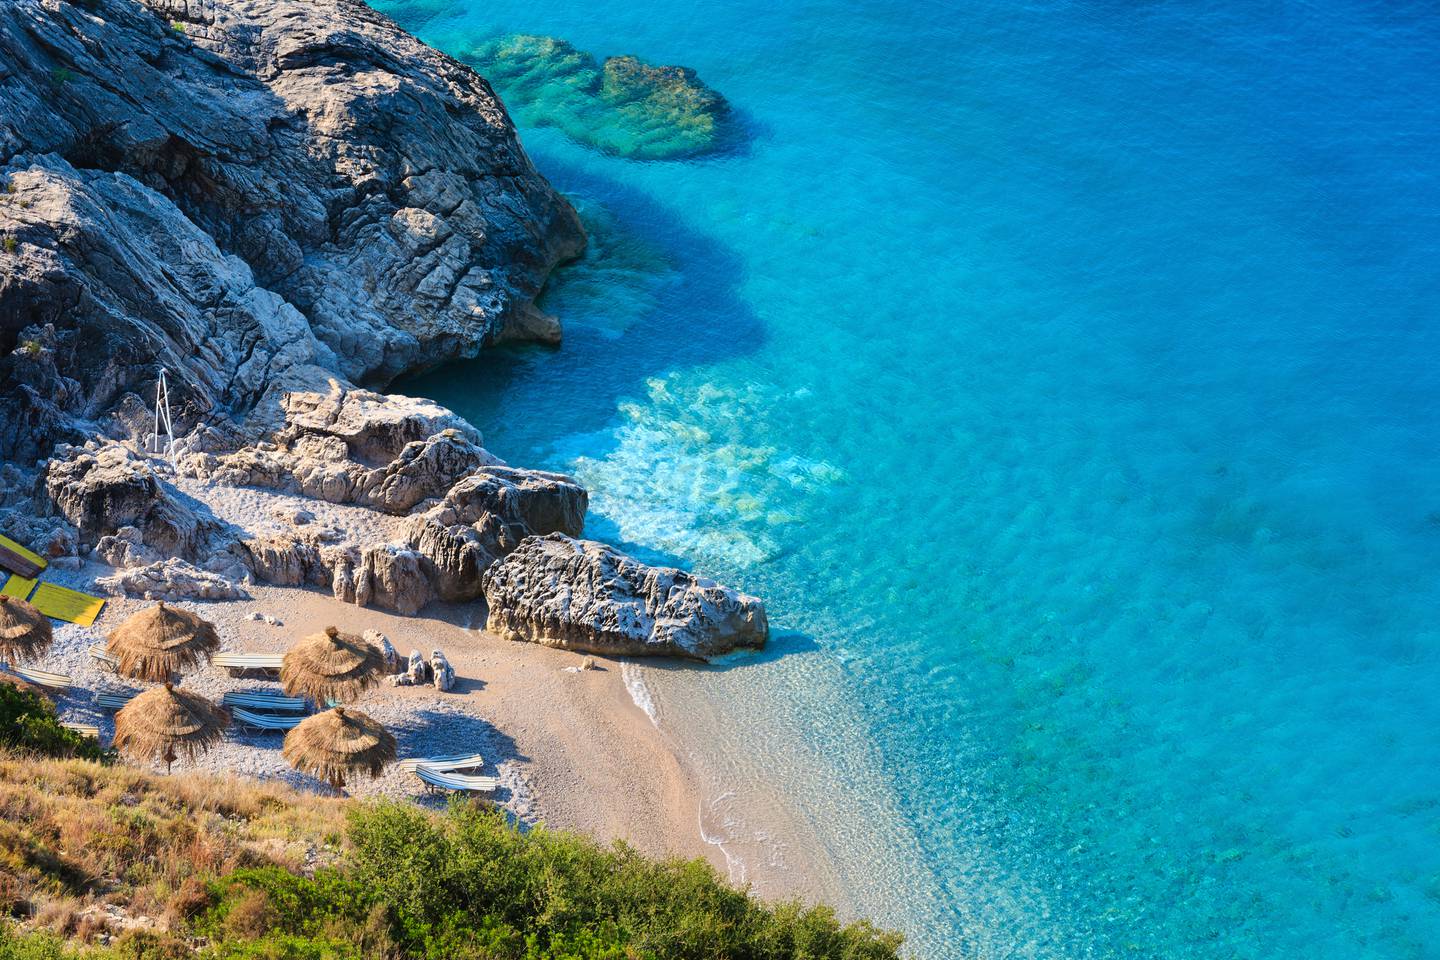 Albania kan tilby mange strender til bade- og solglade nordmenn, og andre. Her fra  Det joniske hav, altså den delen av Middelhavet som ligger mellom Italia, Albania og Hellas.